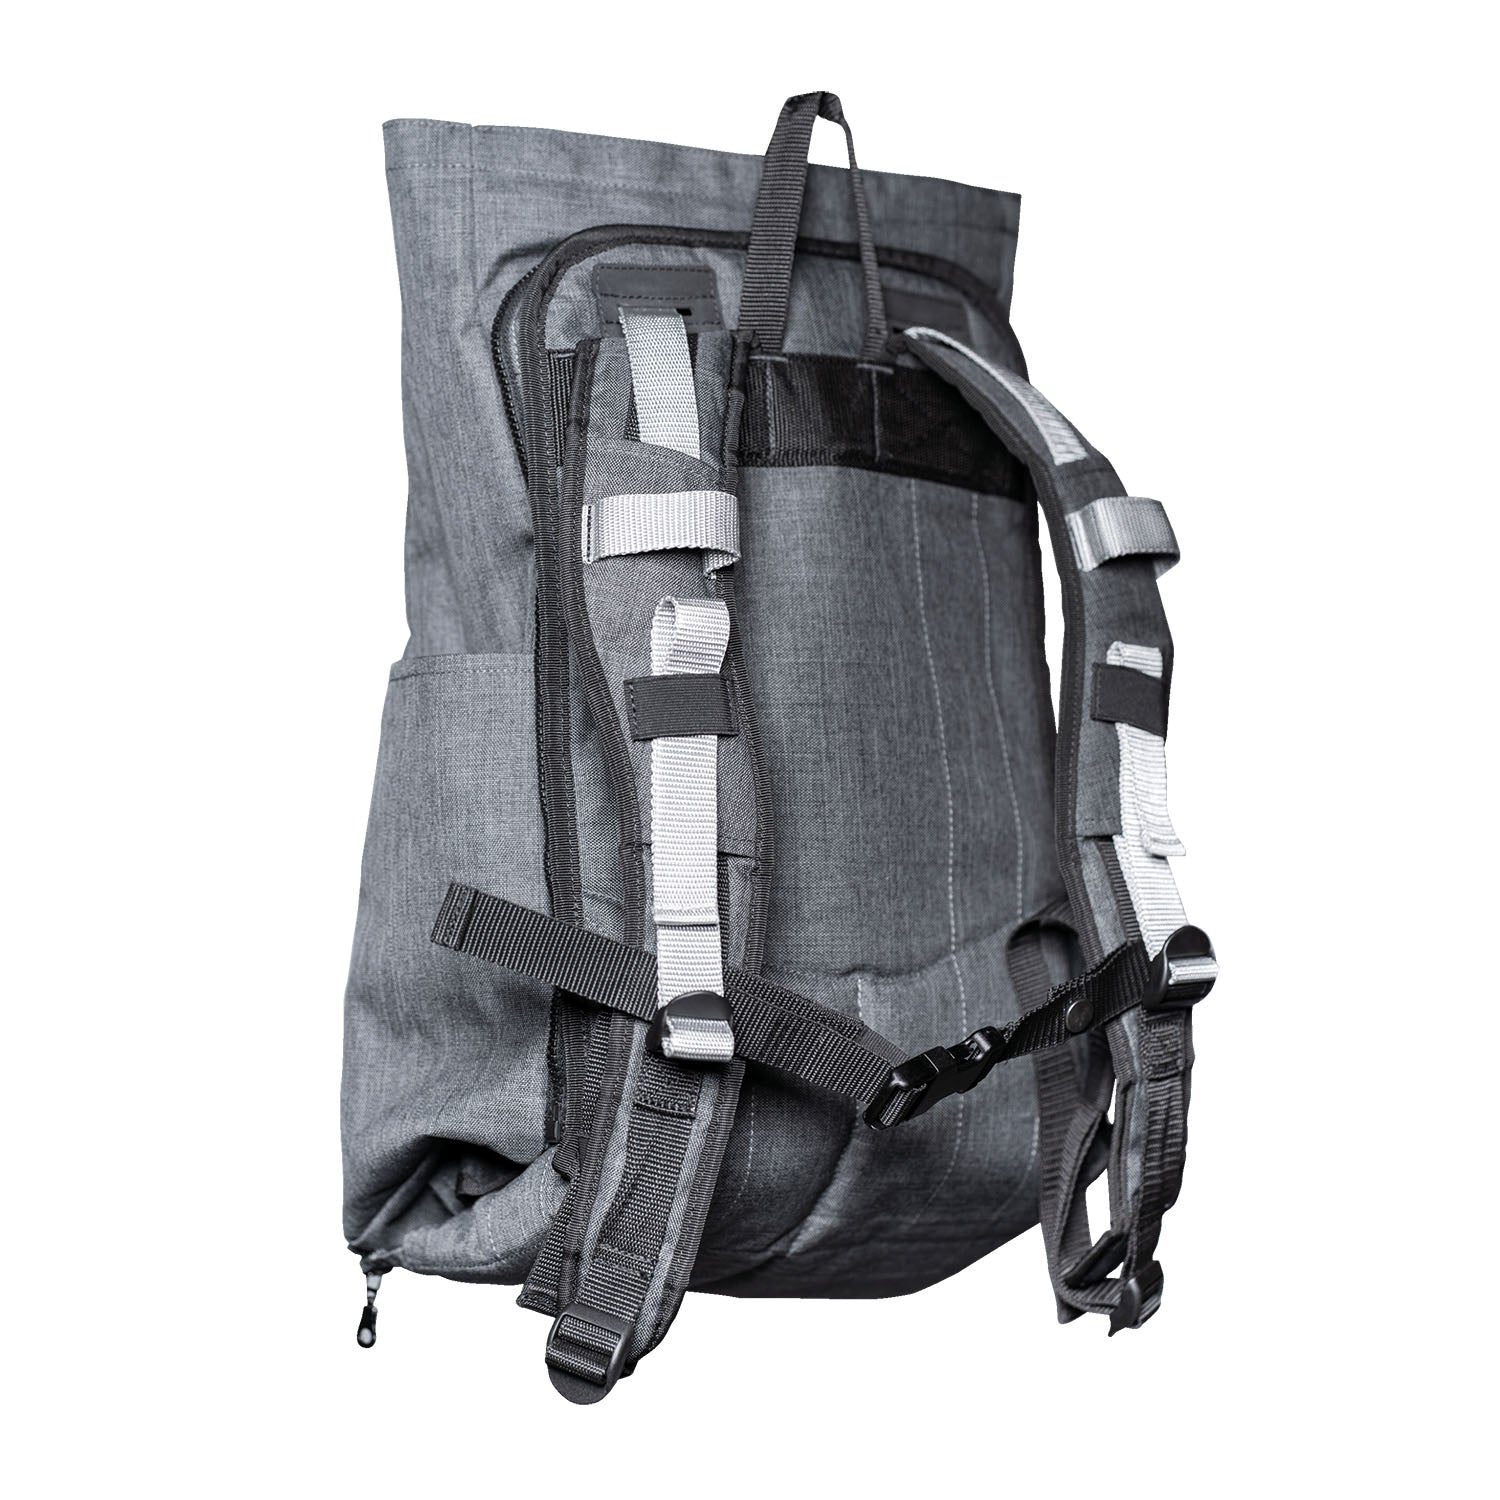 HOMB - Rucksack mit Kindertrage - Rückentrage ab 2 Jahre bis 25 kg-1